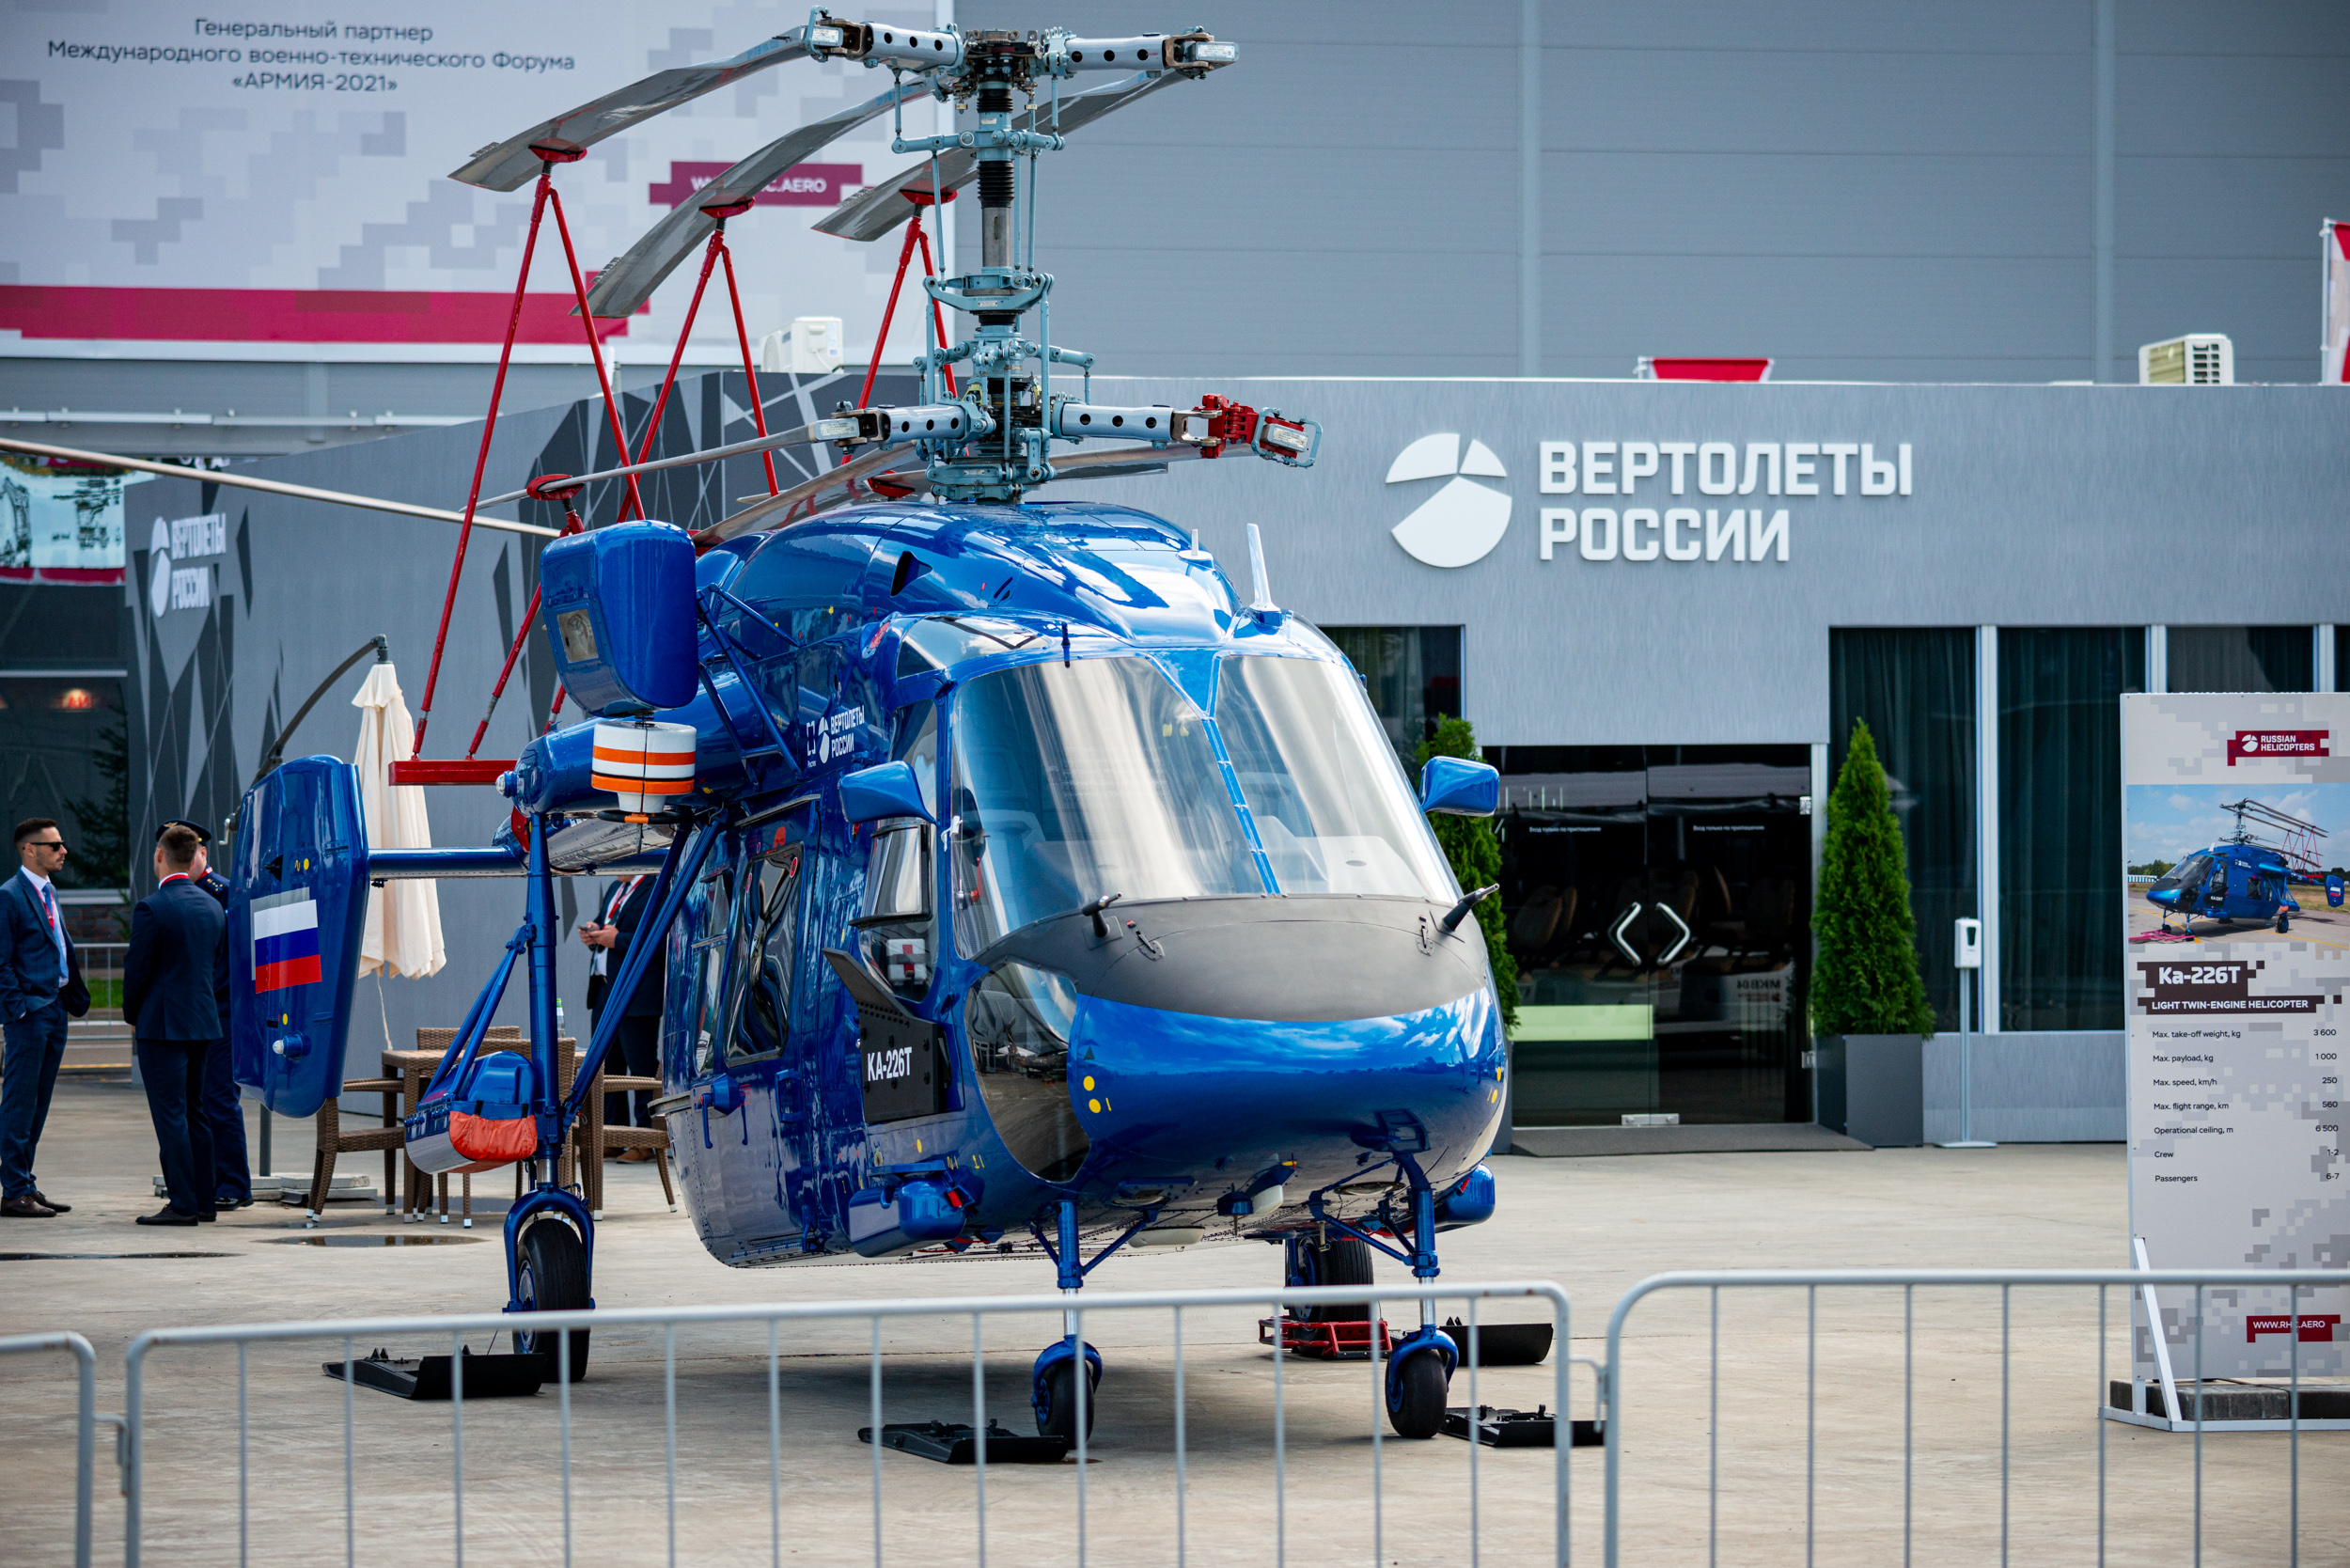 Улан-Удэнский авиазавод впервые представил модернизированный вертолет Ка-226Т на форуме «Армия»